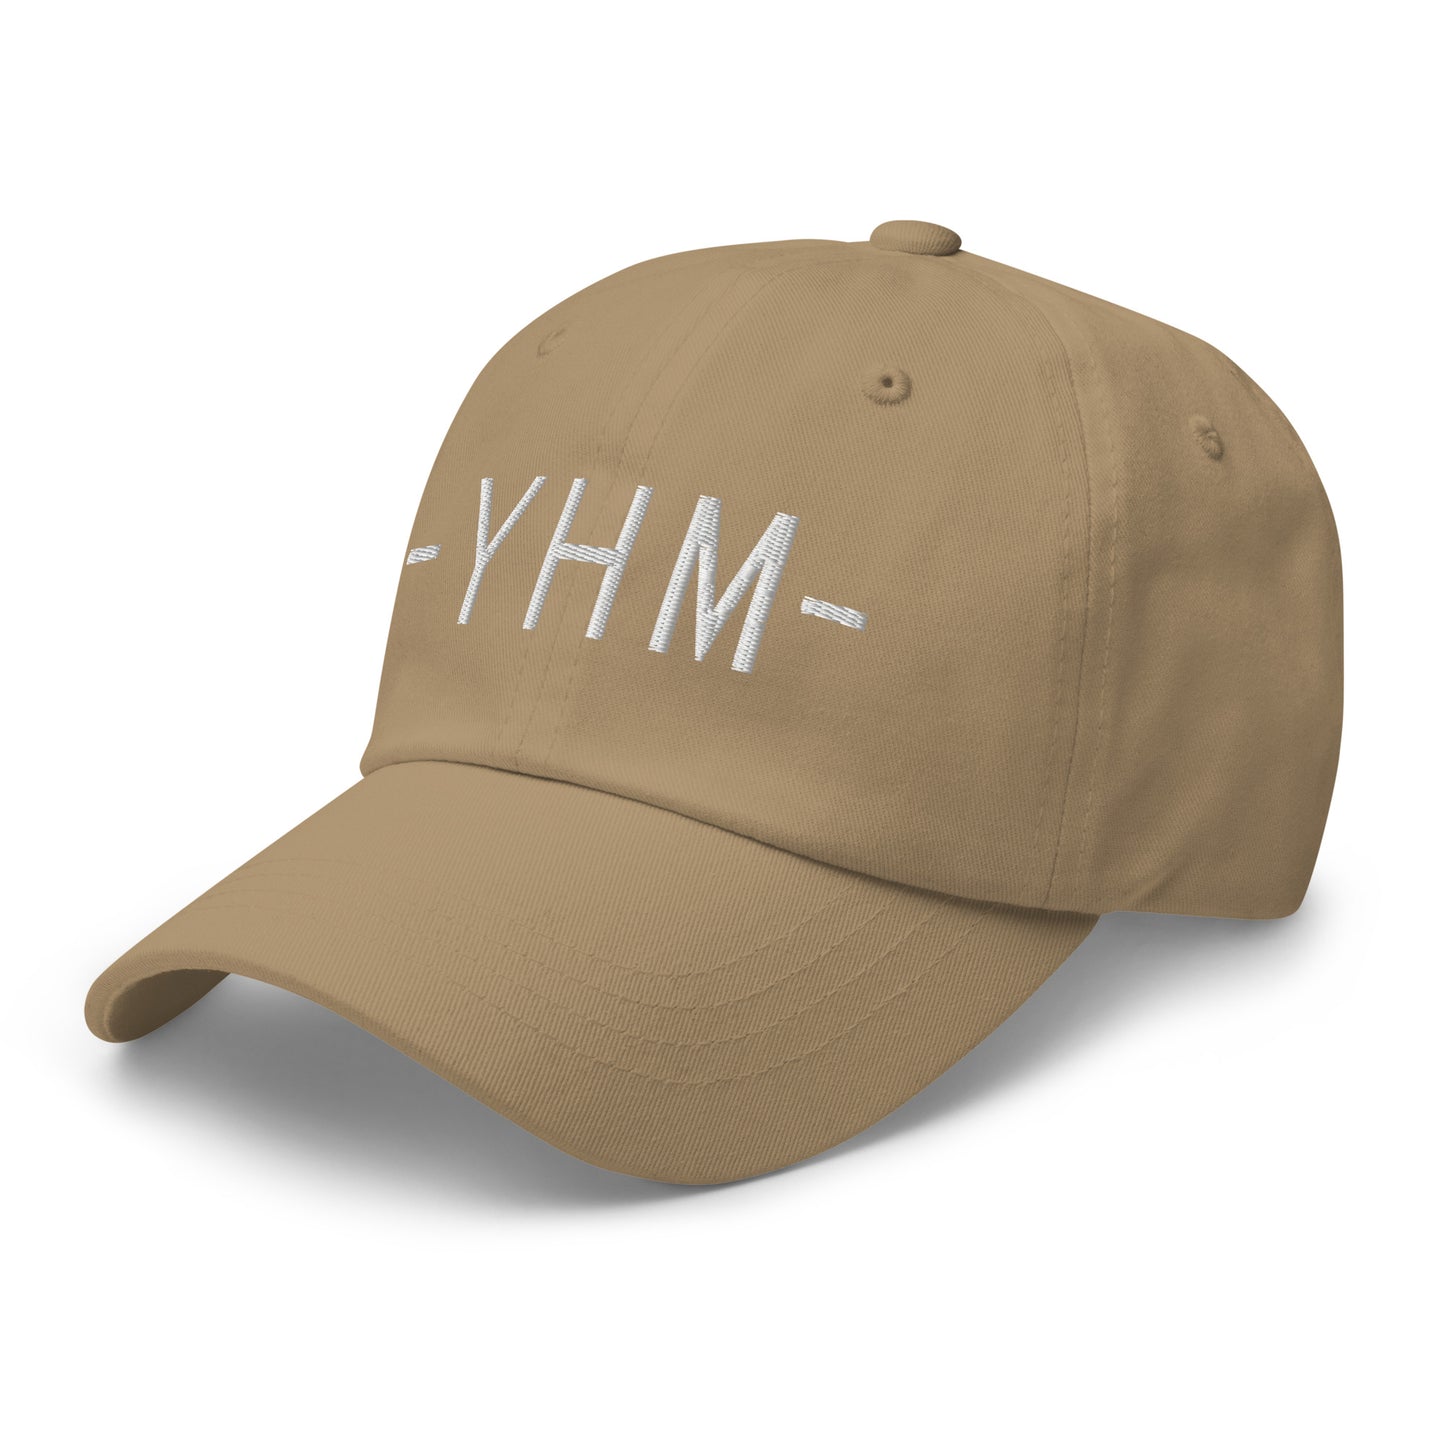 Souvenir Baseball Cap - White • YHM Hamilton • YHM Designs - Image 22